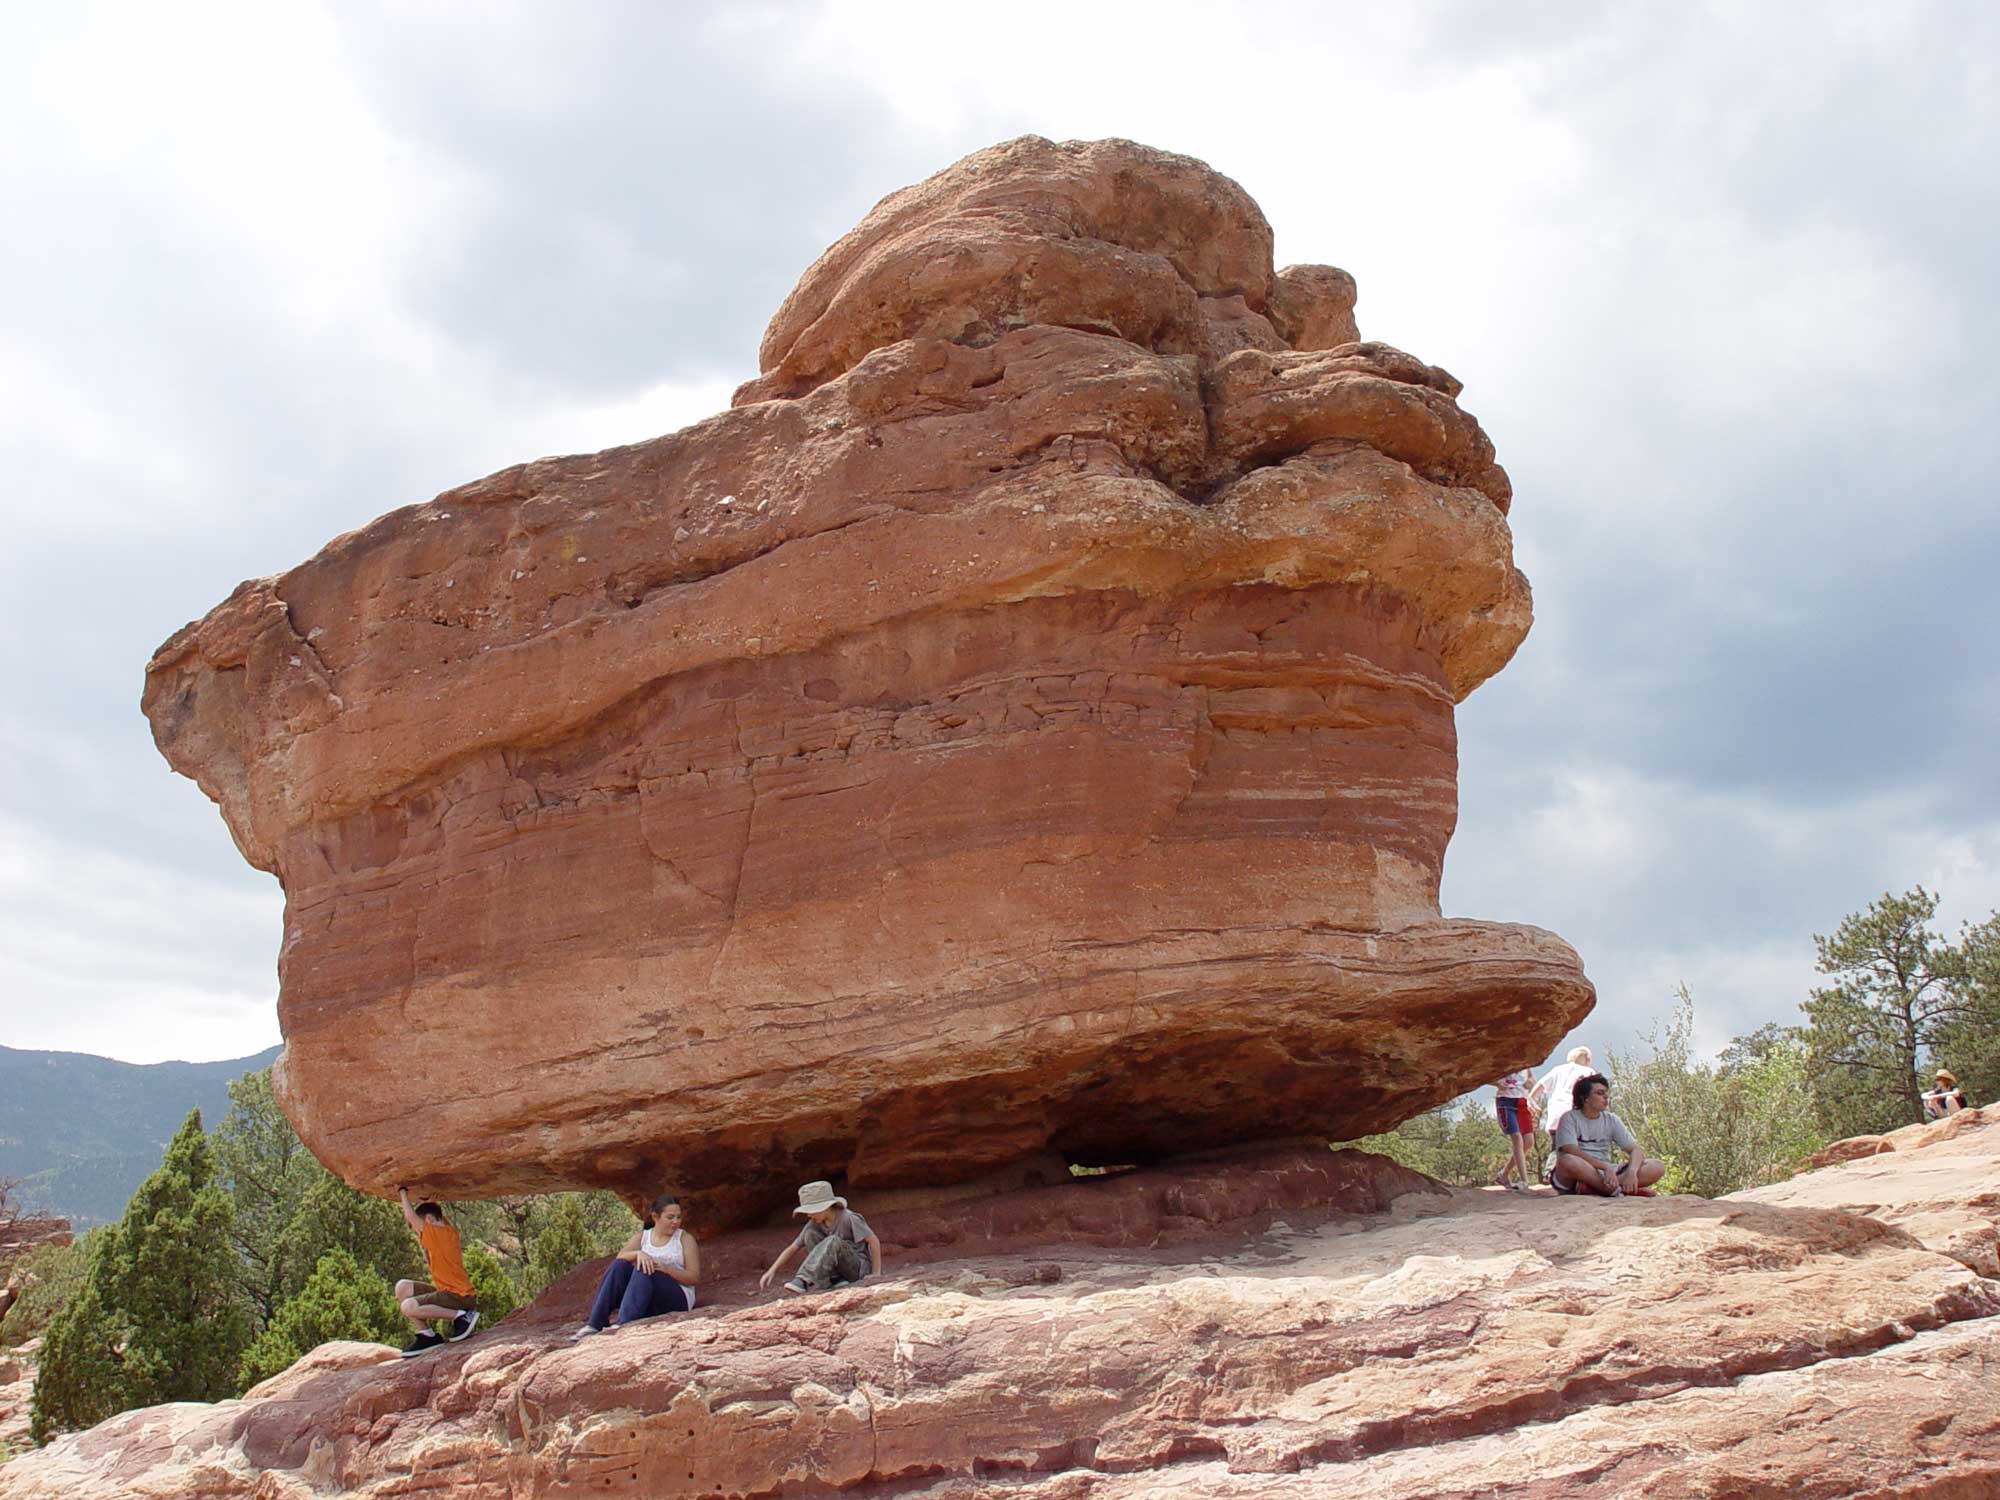 Photograph of Balanced Rock at Garden of the Gods in Colorado Springs.